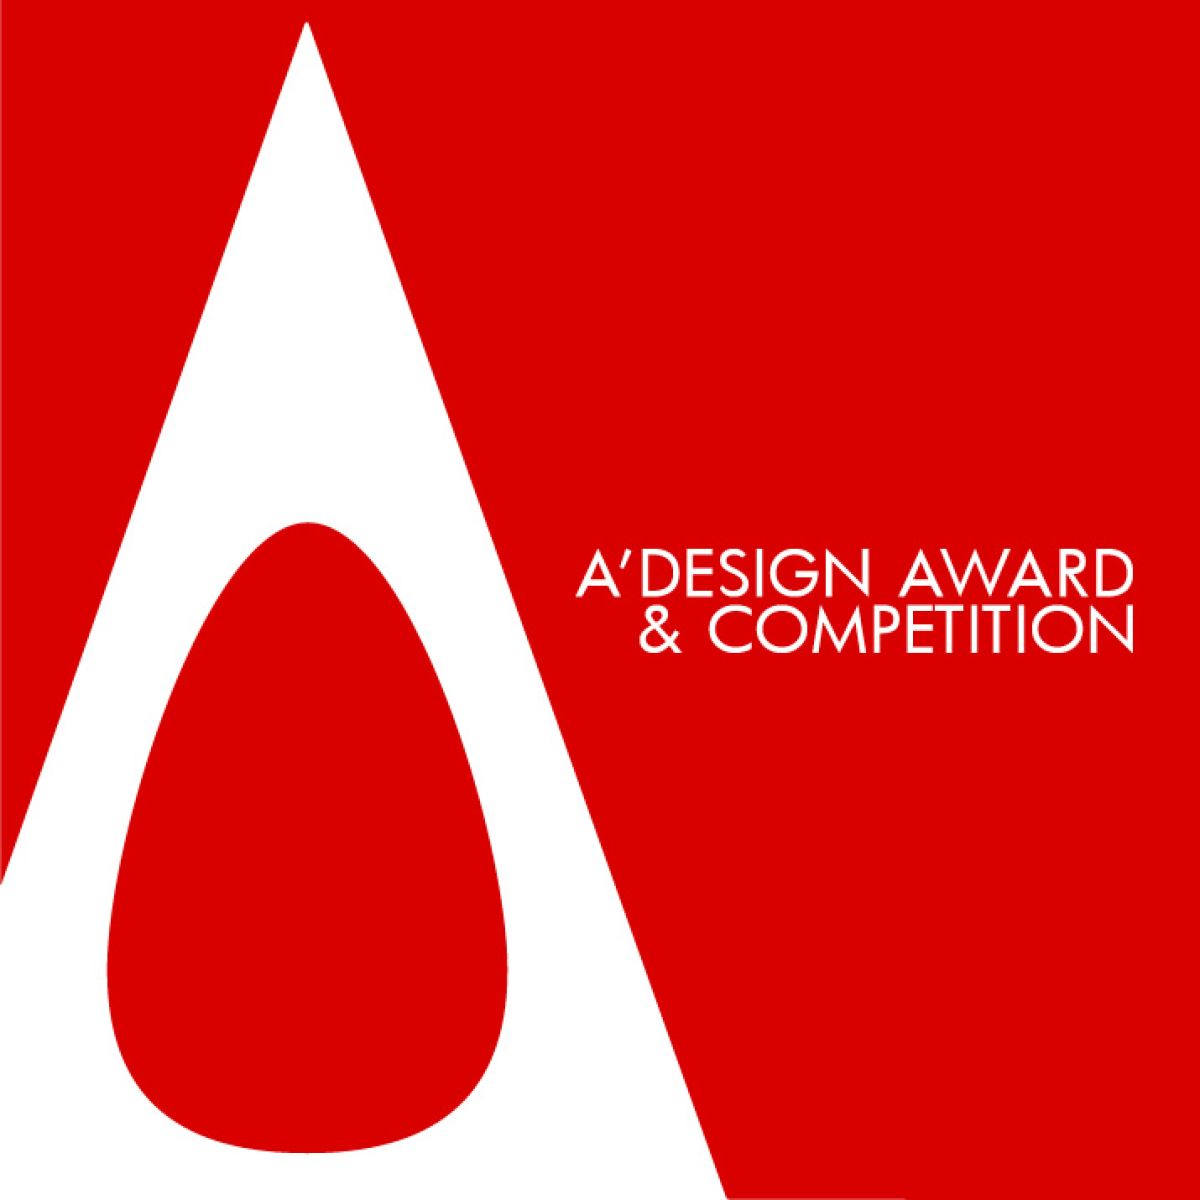 Weź udział w konkursie A' International Design Award & Competition